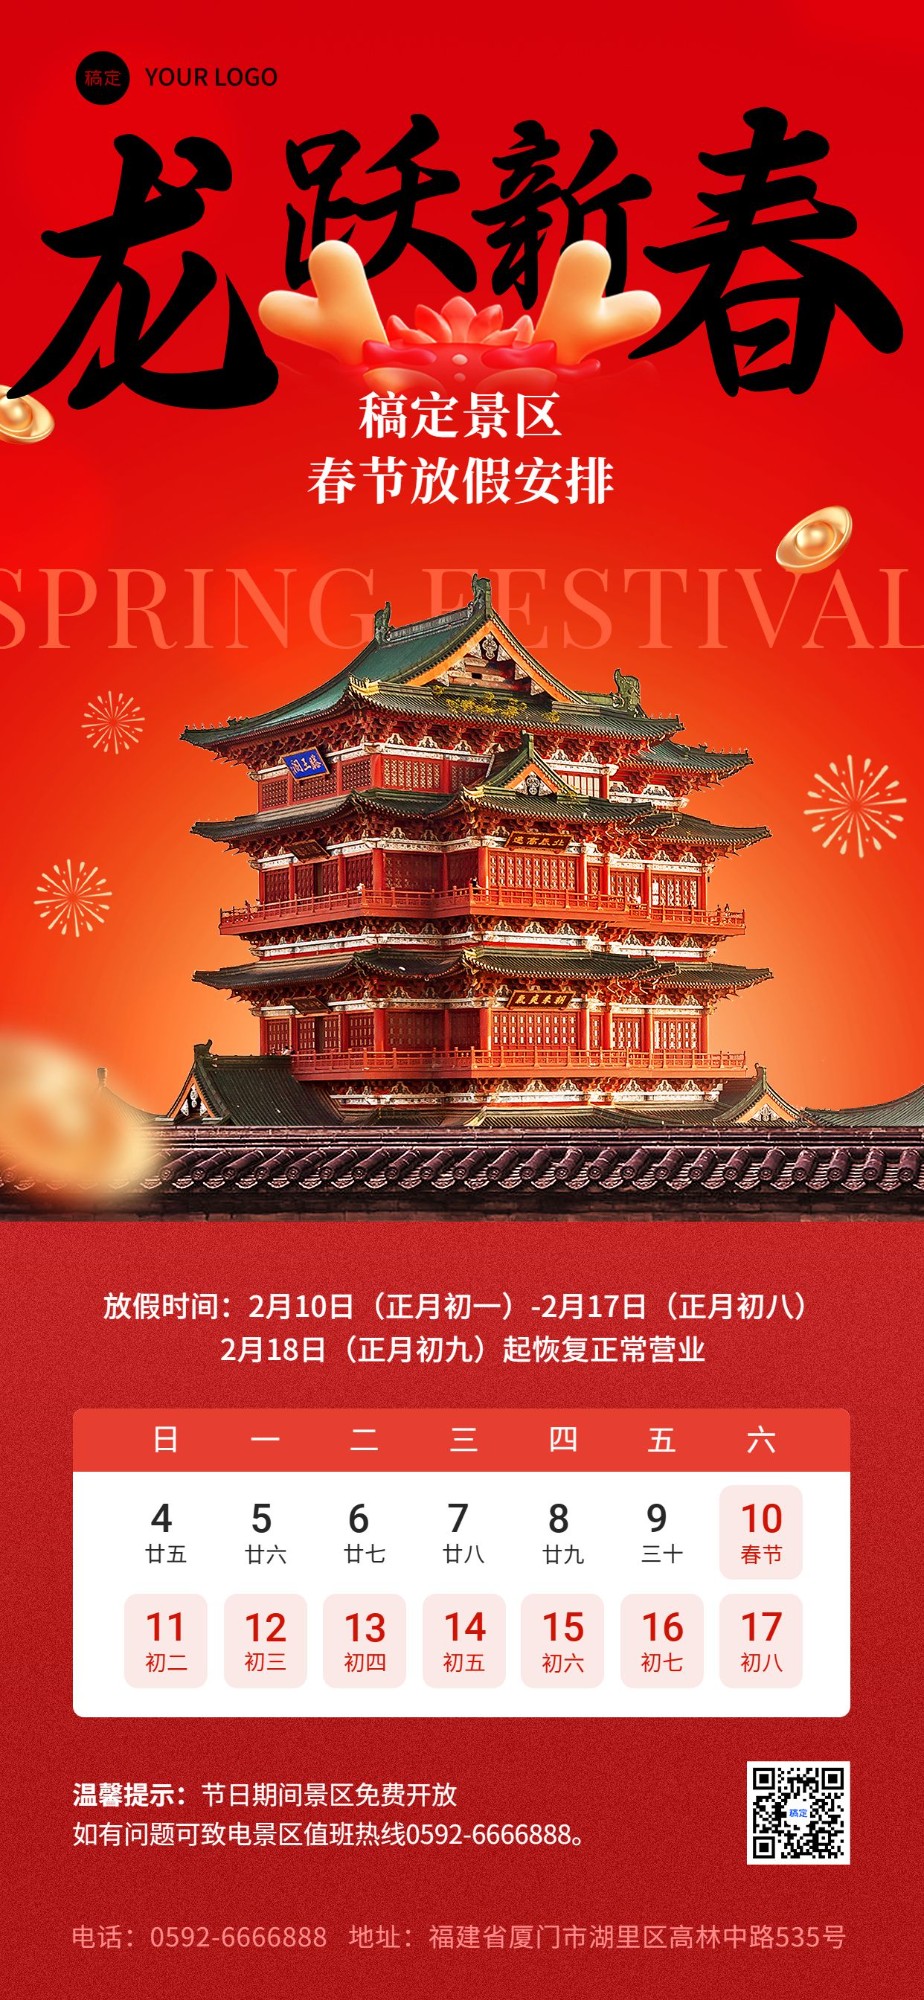 旅游出行春节景区放假通知全屏竖版海报预览效果